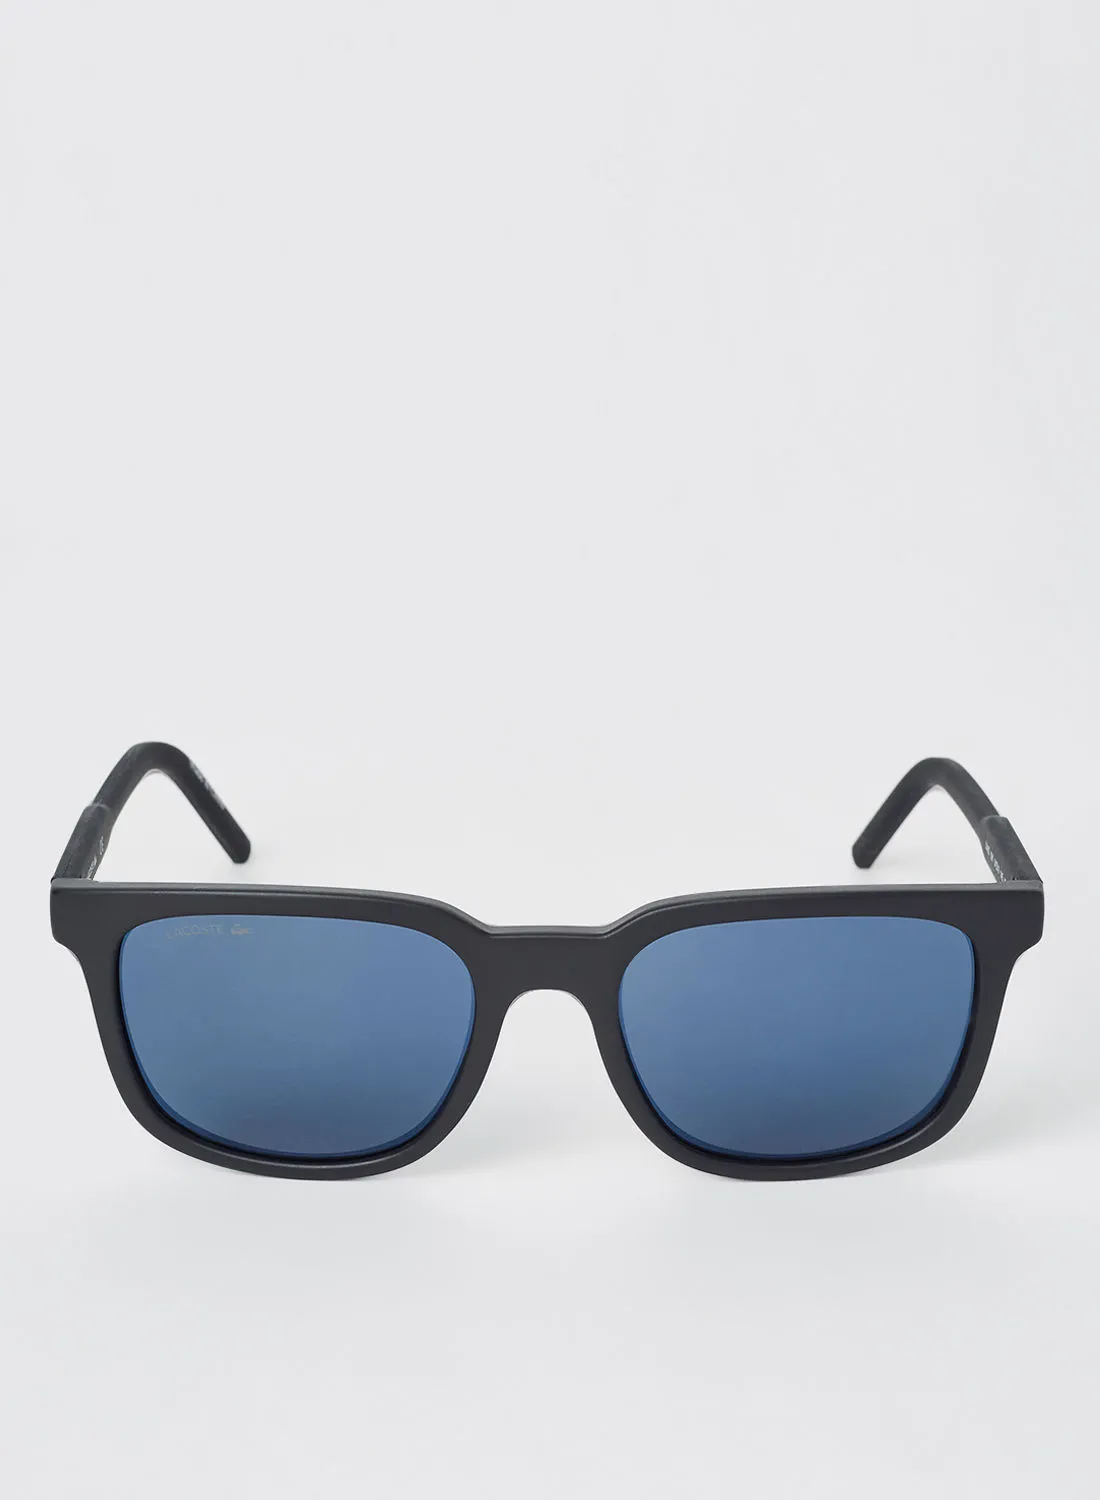 نظارات شمسية مستطيلة محقونة كاملة الحواف للرجال من لاكوست - مقاس العدسة: 54 مم